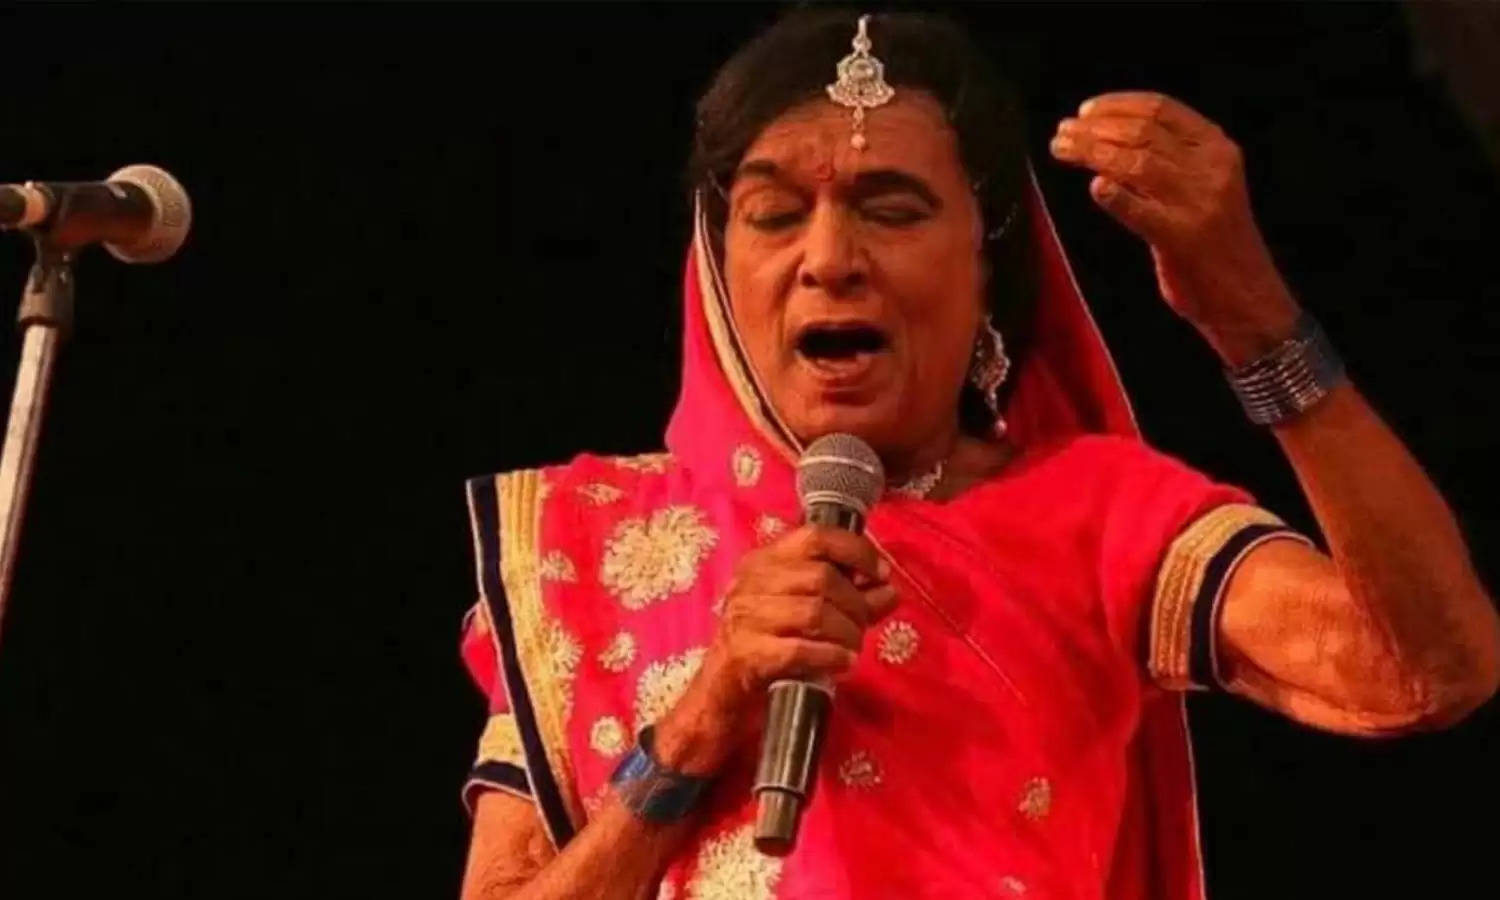 लौंडा नाच के लिए मशहूर पद्मश्री रामचंद्र मांझी का निधन, मुफलिसी में कटा आखिरी समय